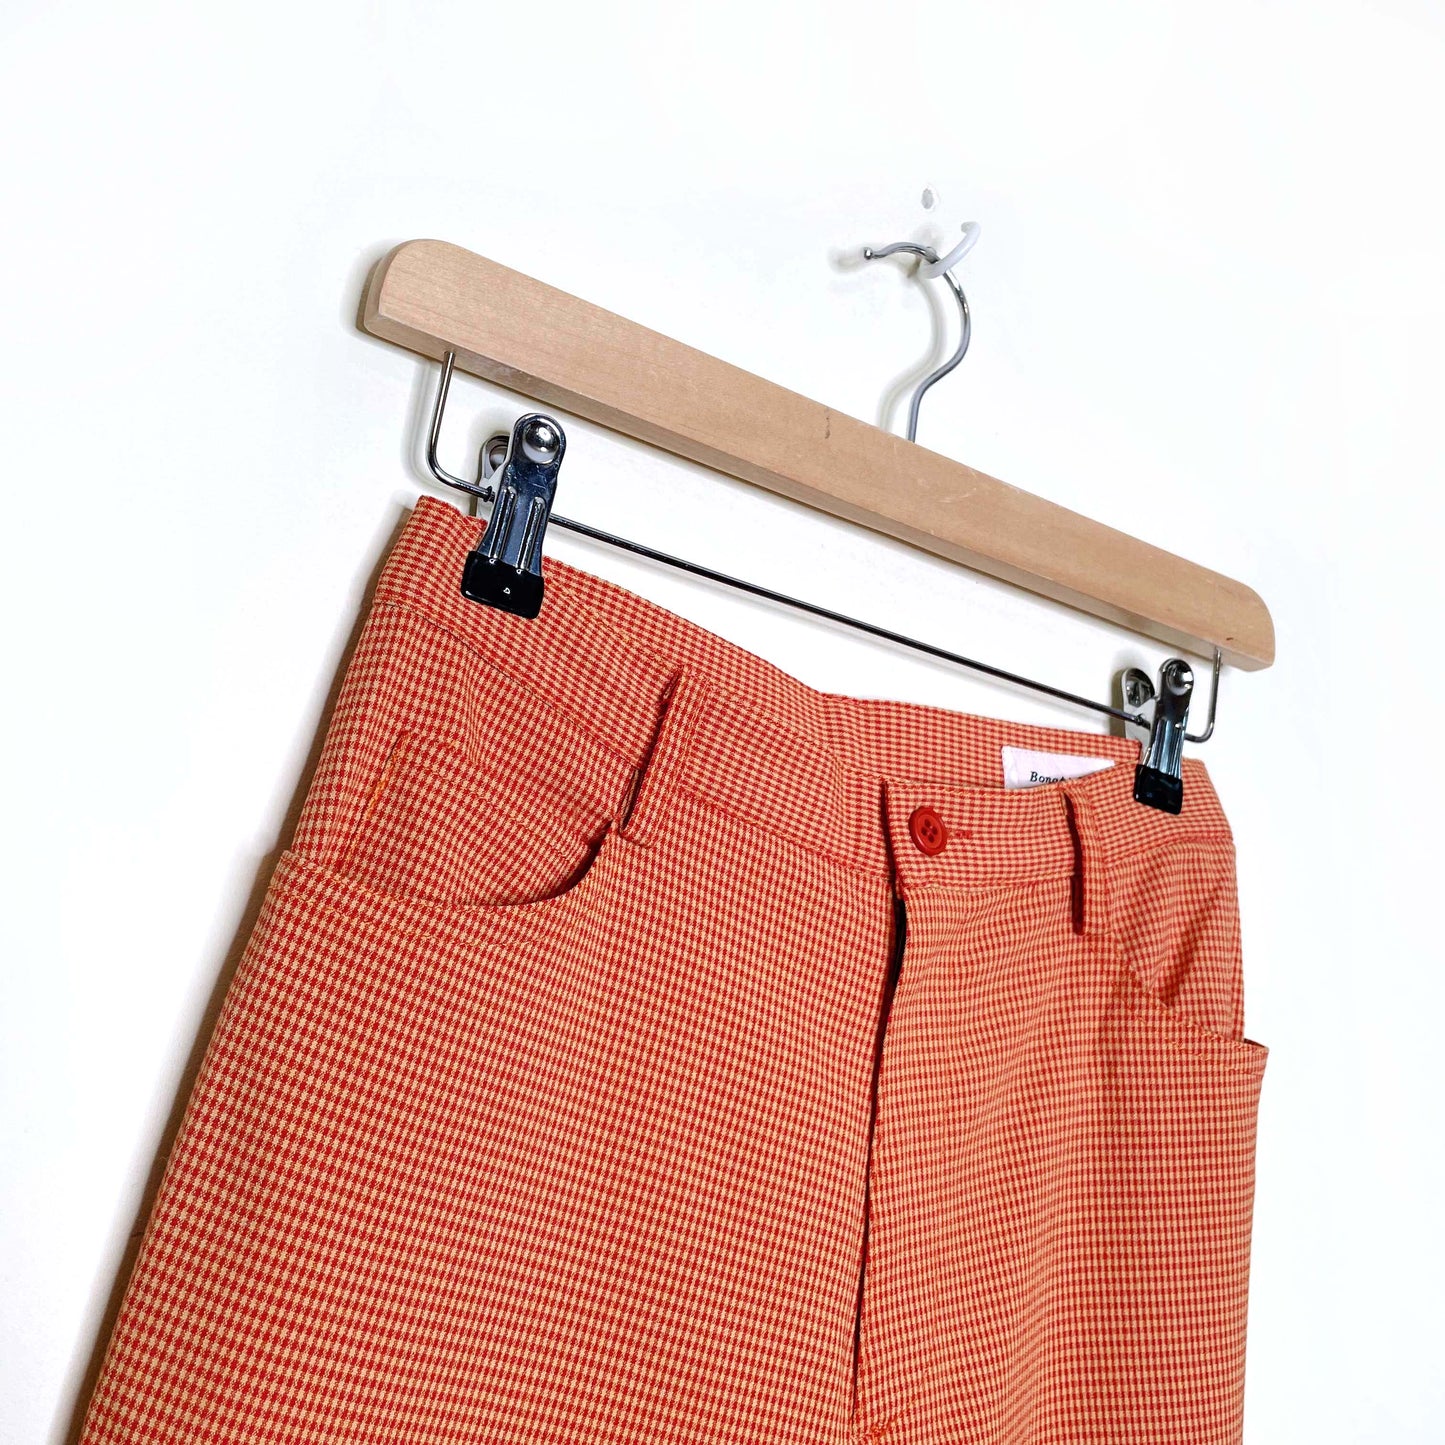 vintage 70s bonappétite orange gingham plaid flare pants - size 1